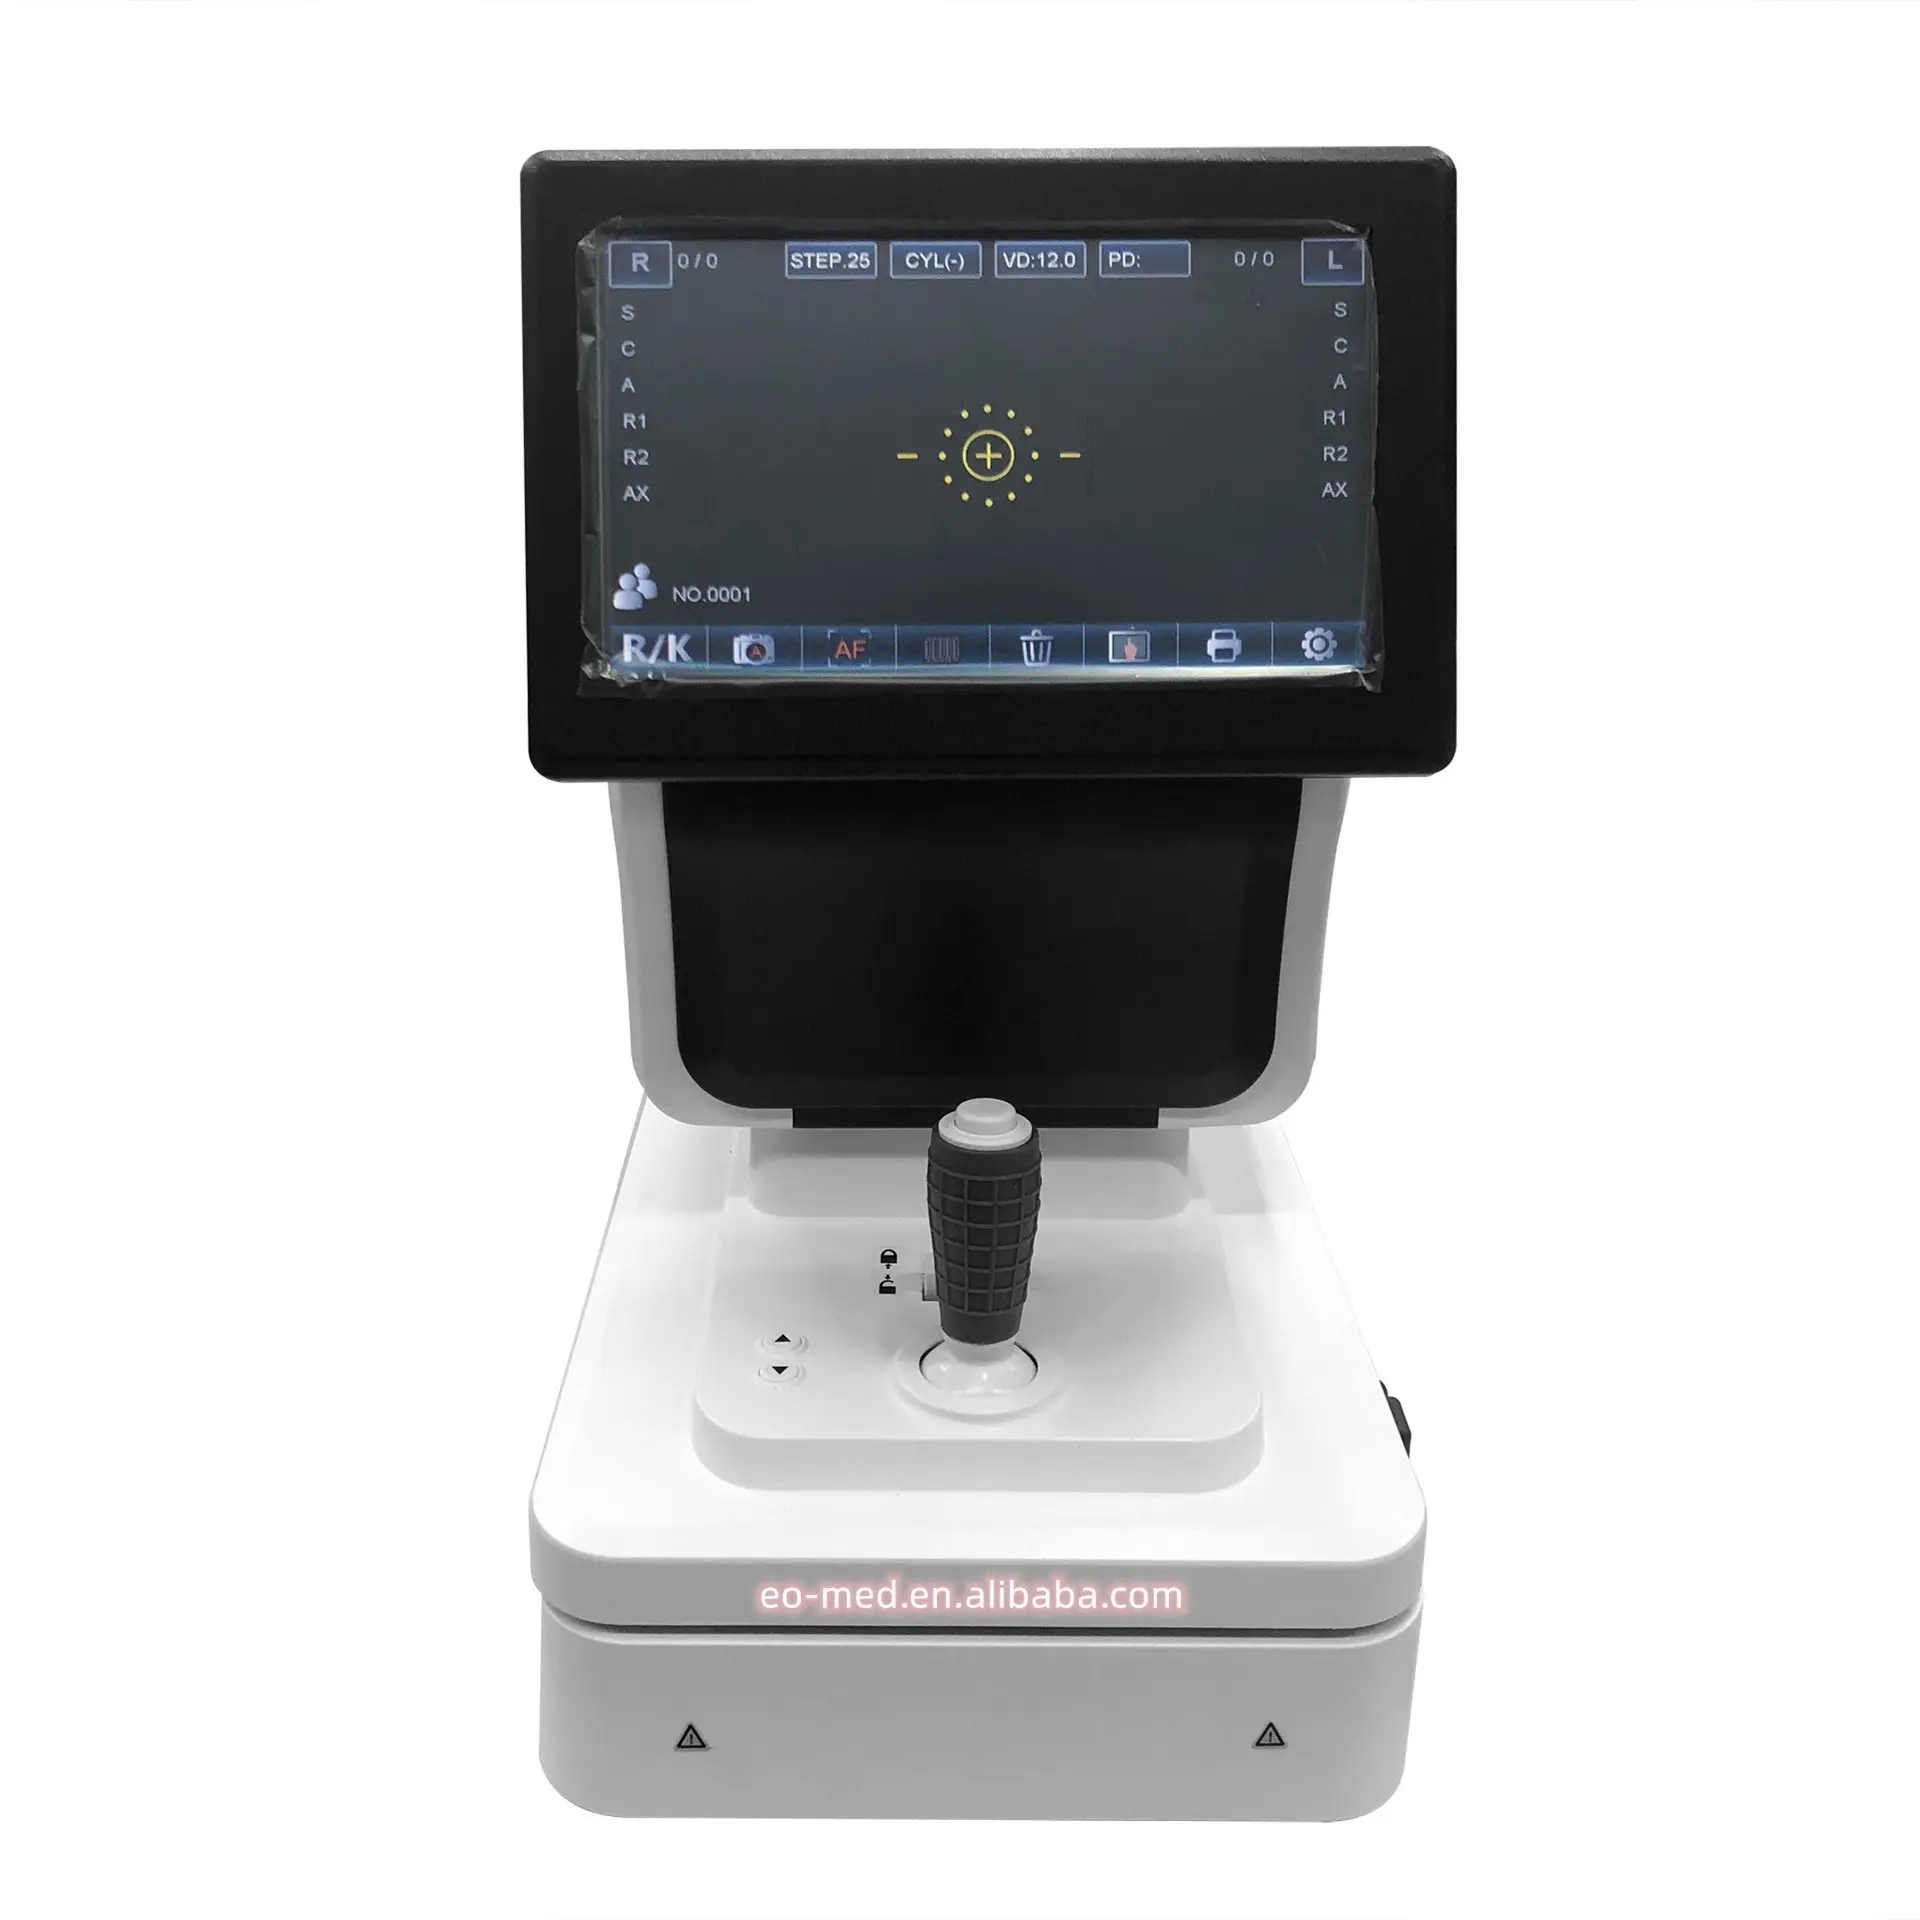 Лучший офтальмологический автоматический топ продаж цифровой автоматический рефрактометр оборудование с моторизованным подбородком ARK85